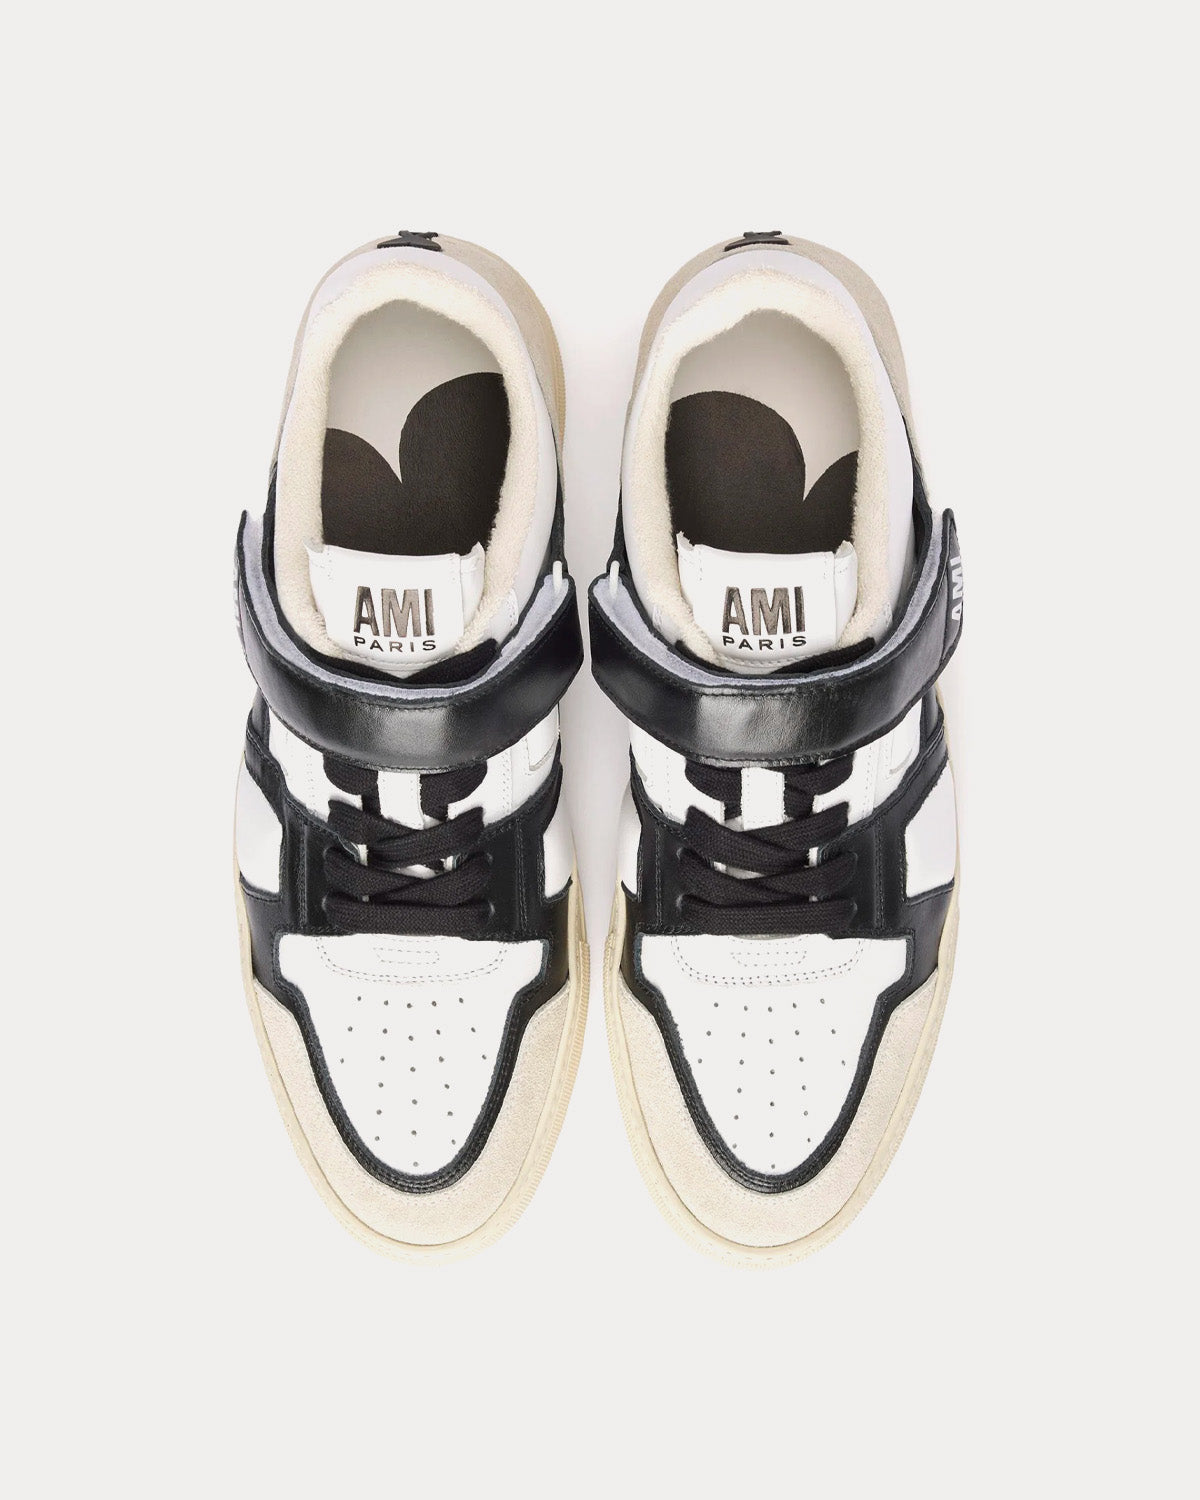 AMI - Ami De Coeur Black / White Low Top Sneakers